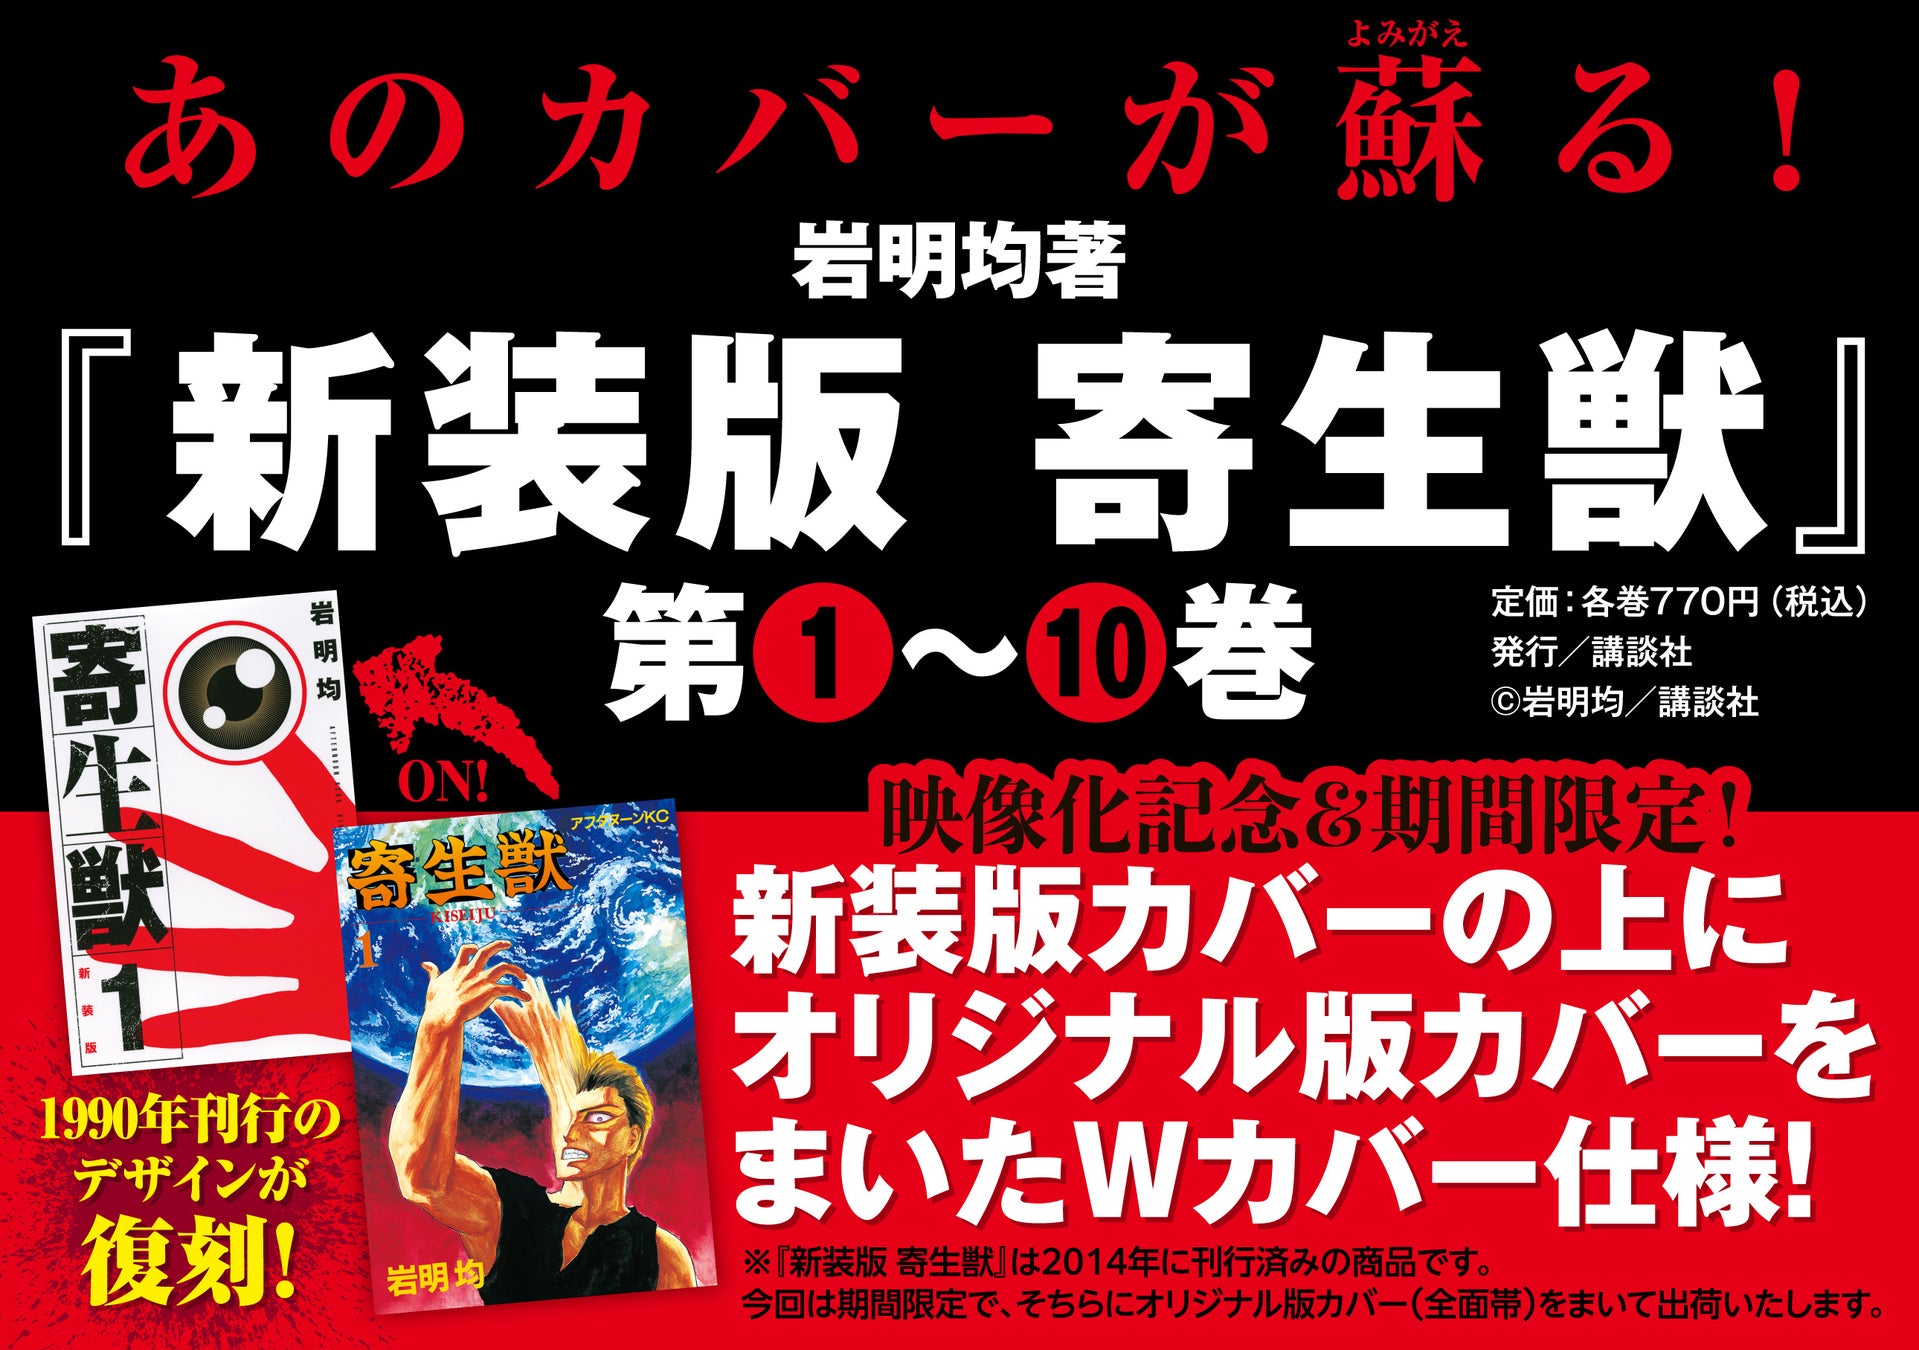 漫画投稿サイト「めちゃコミック クリエイターズ」が4月1日(月)より恋愛マンガ原作大賞を開催